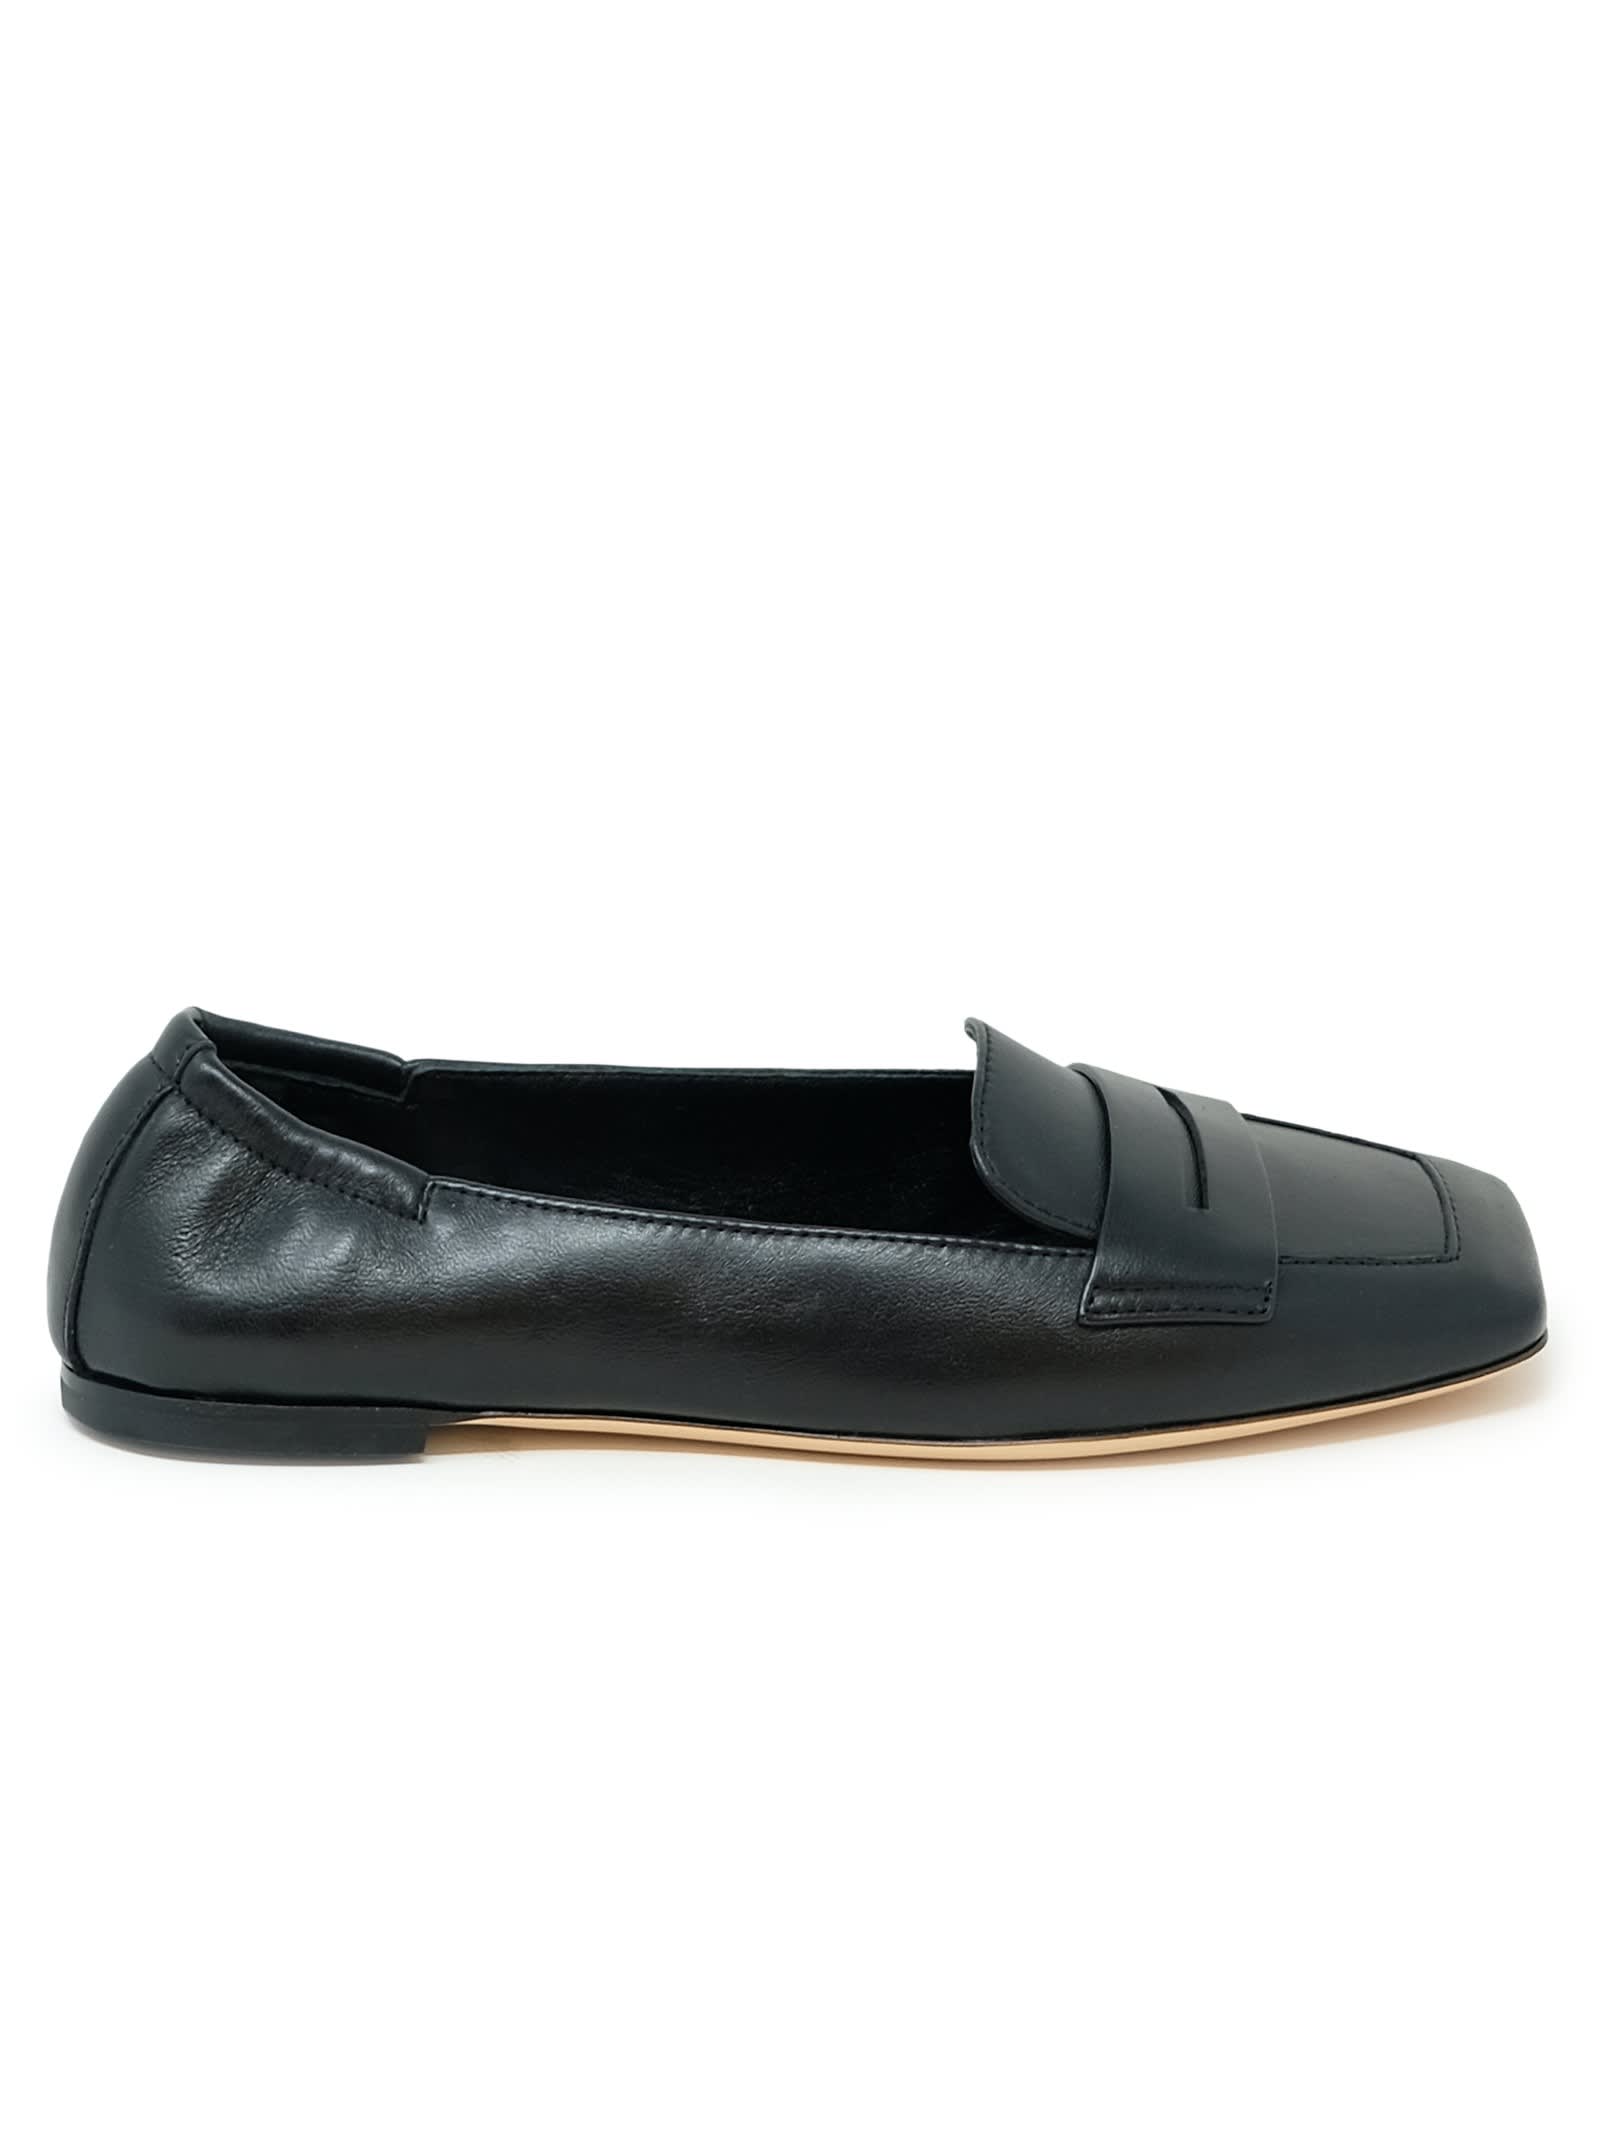 Shop Agl Attilio Giusti Leombruni Agl Black Leather Loafer Softy